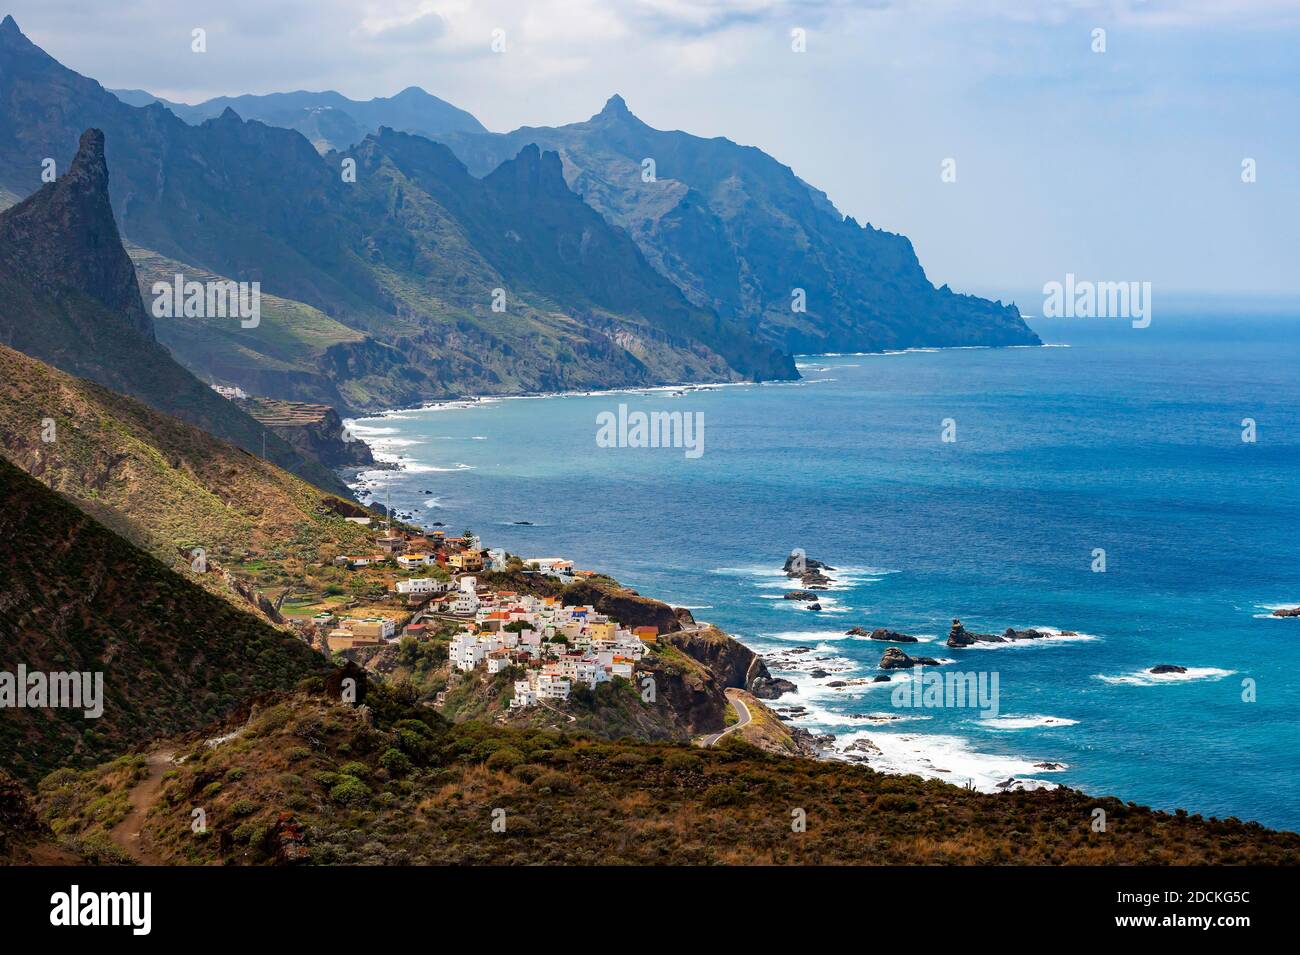 Route côtière avec falaises près du village d'Almaciga, montagnes d'Anaga, Tenerife, île des Canaries, Espagne Banque D'Images